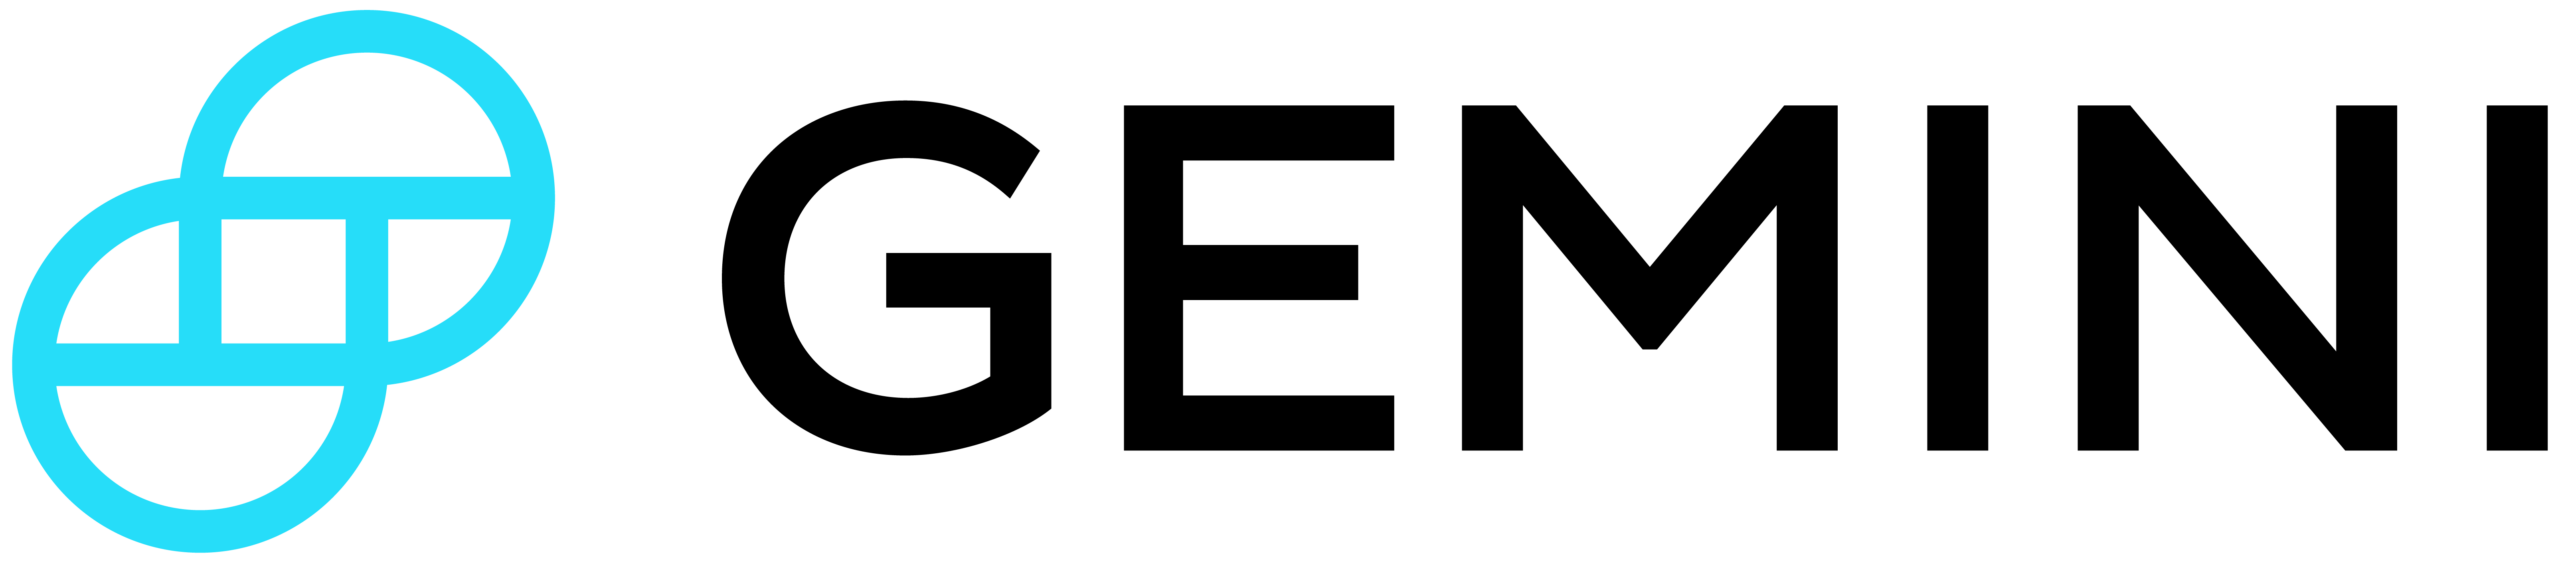 Logo portfela Gemini